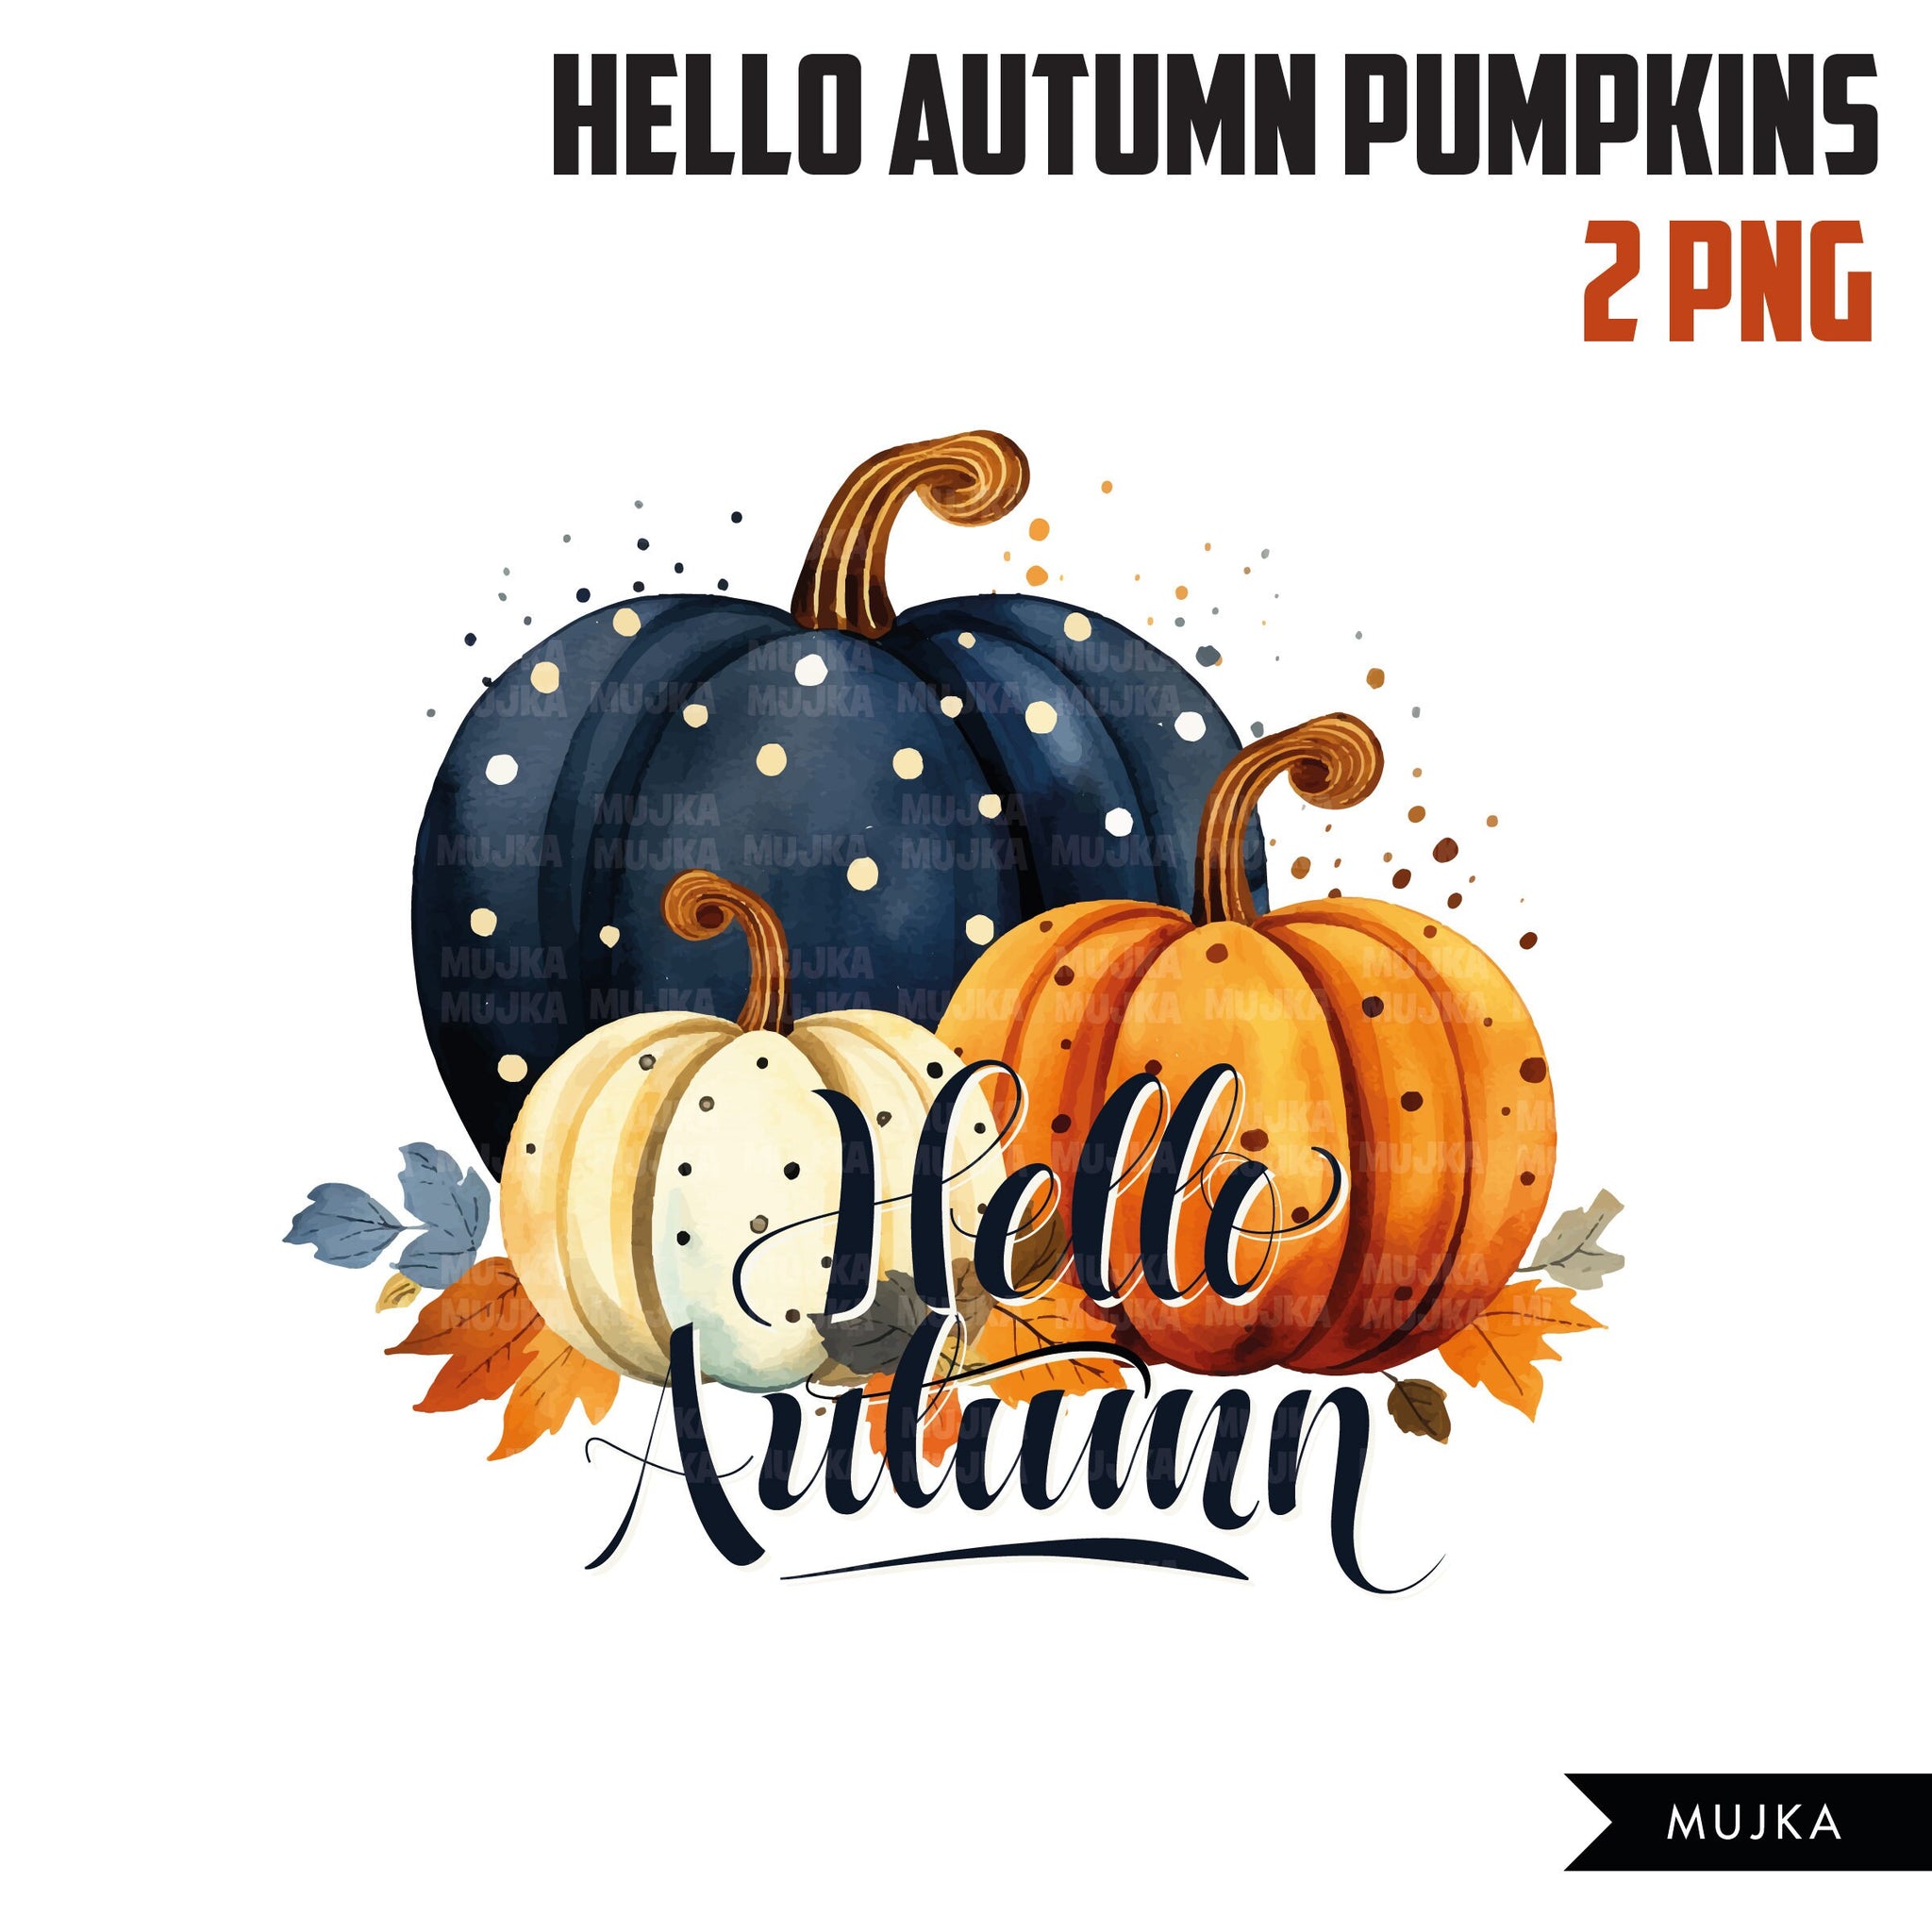 fall pumpkin clip art png